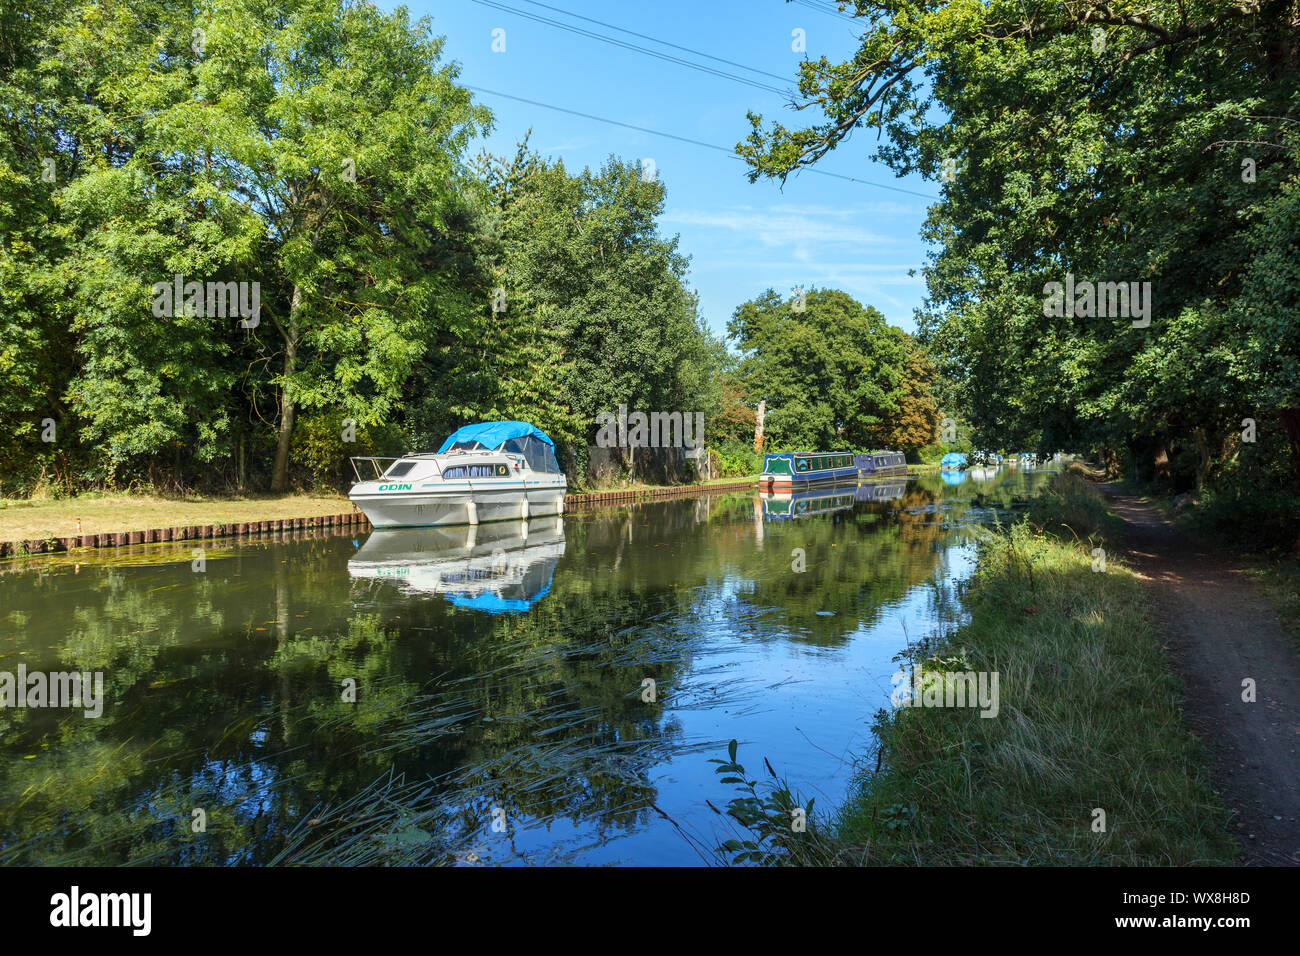 Bateaux amarrés sur les rives de la rivière Wey comme il se joint à l'Basingstoke Canal entre Weybridge et New Haw, Surrey, Angleterre du Sud-Est, Royaume-Uni Banque D'Images